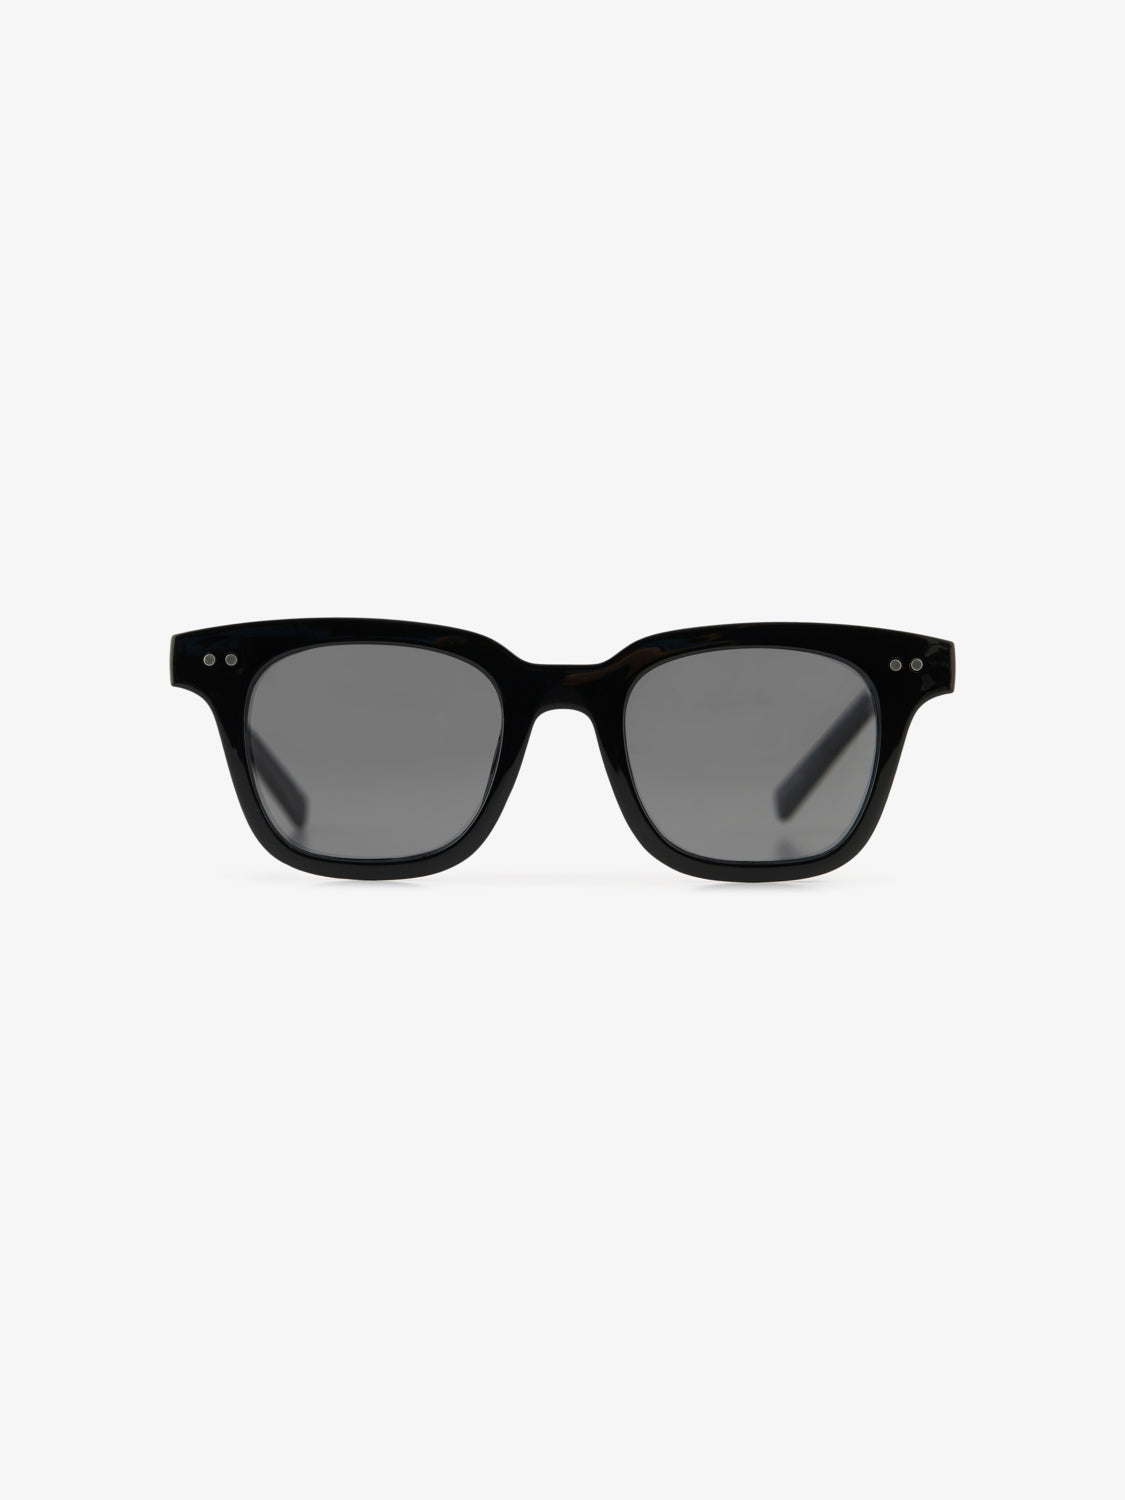 PCHEMMA Sunglasses - Black